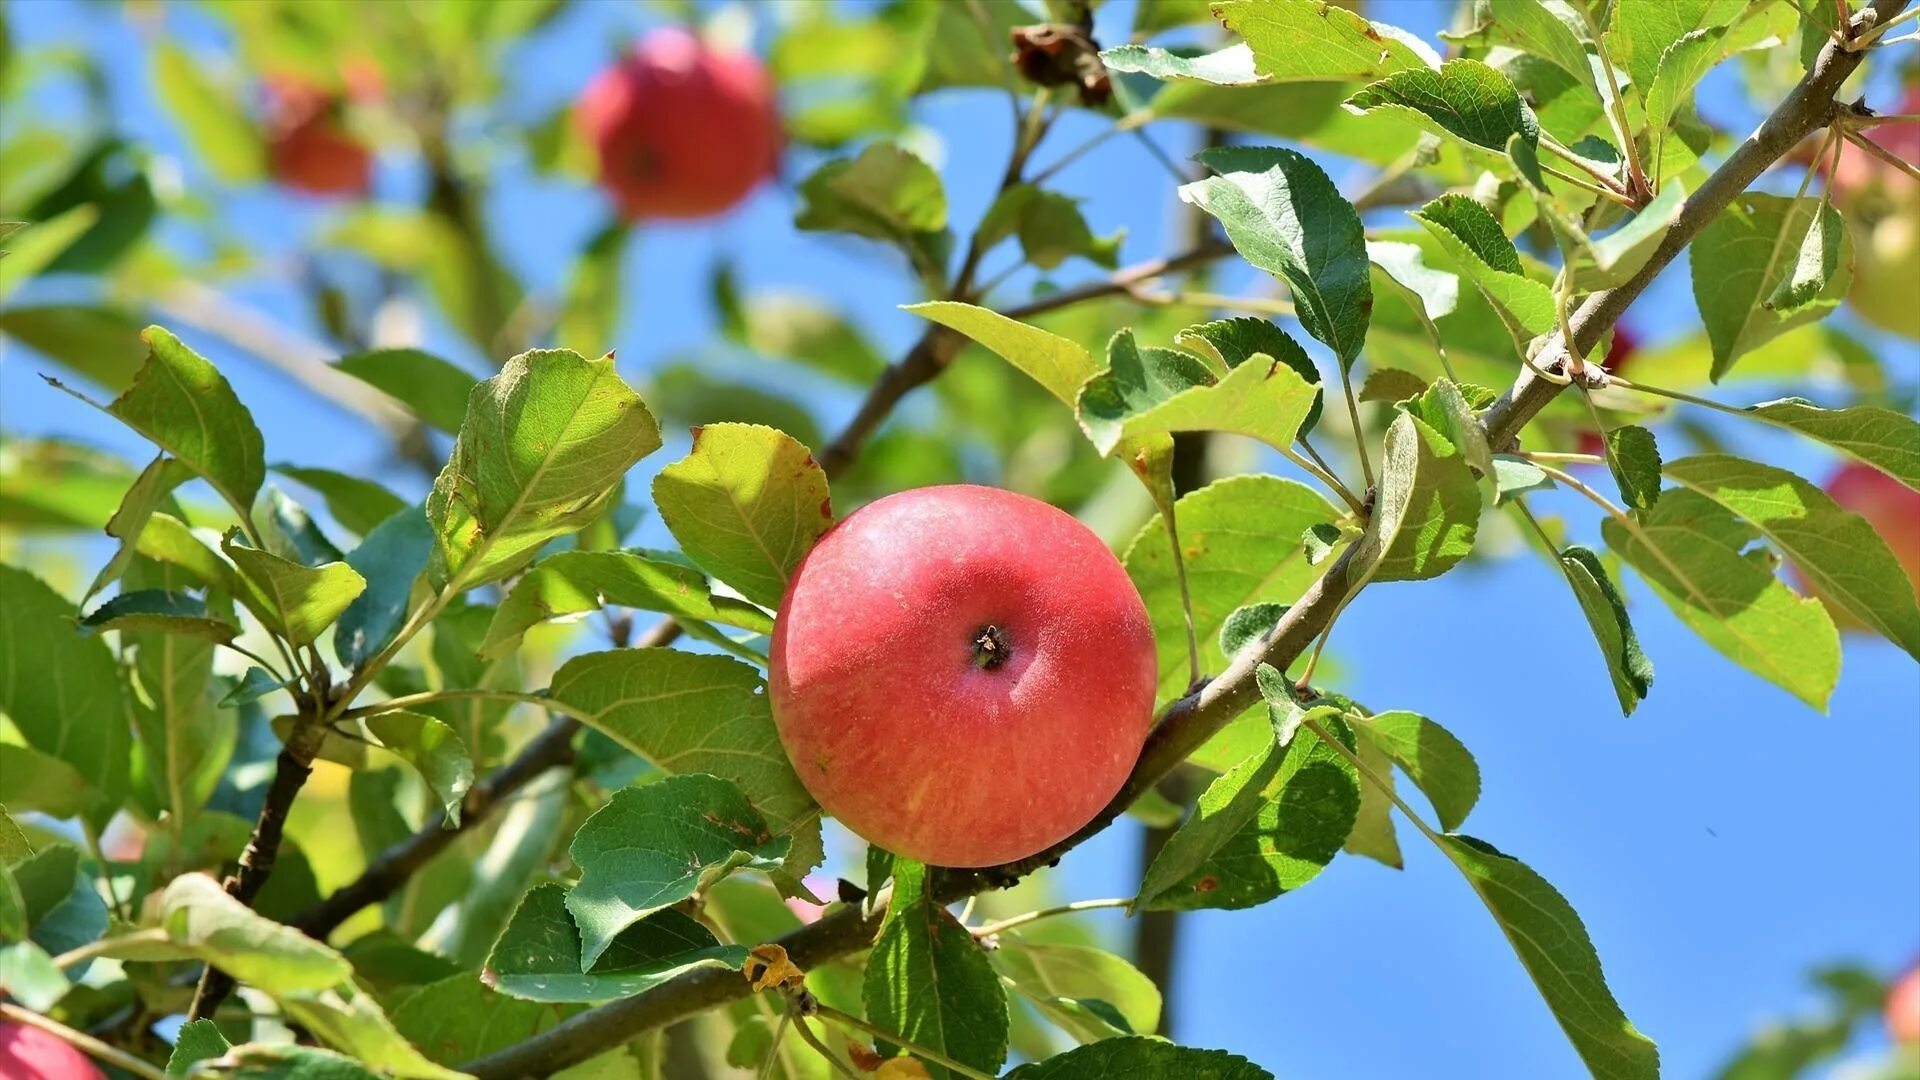 Яблоньки 2. Яблоня "Рождественское" (Malus domestica). Пинк леди яблоки дерево. Яблоки на дереве. Яблоня с яблоками.